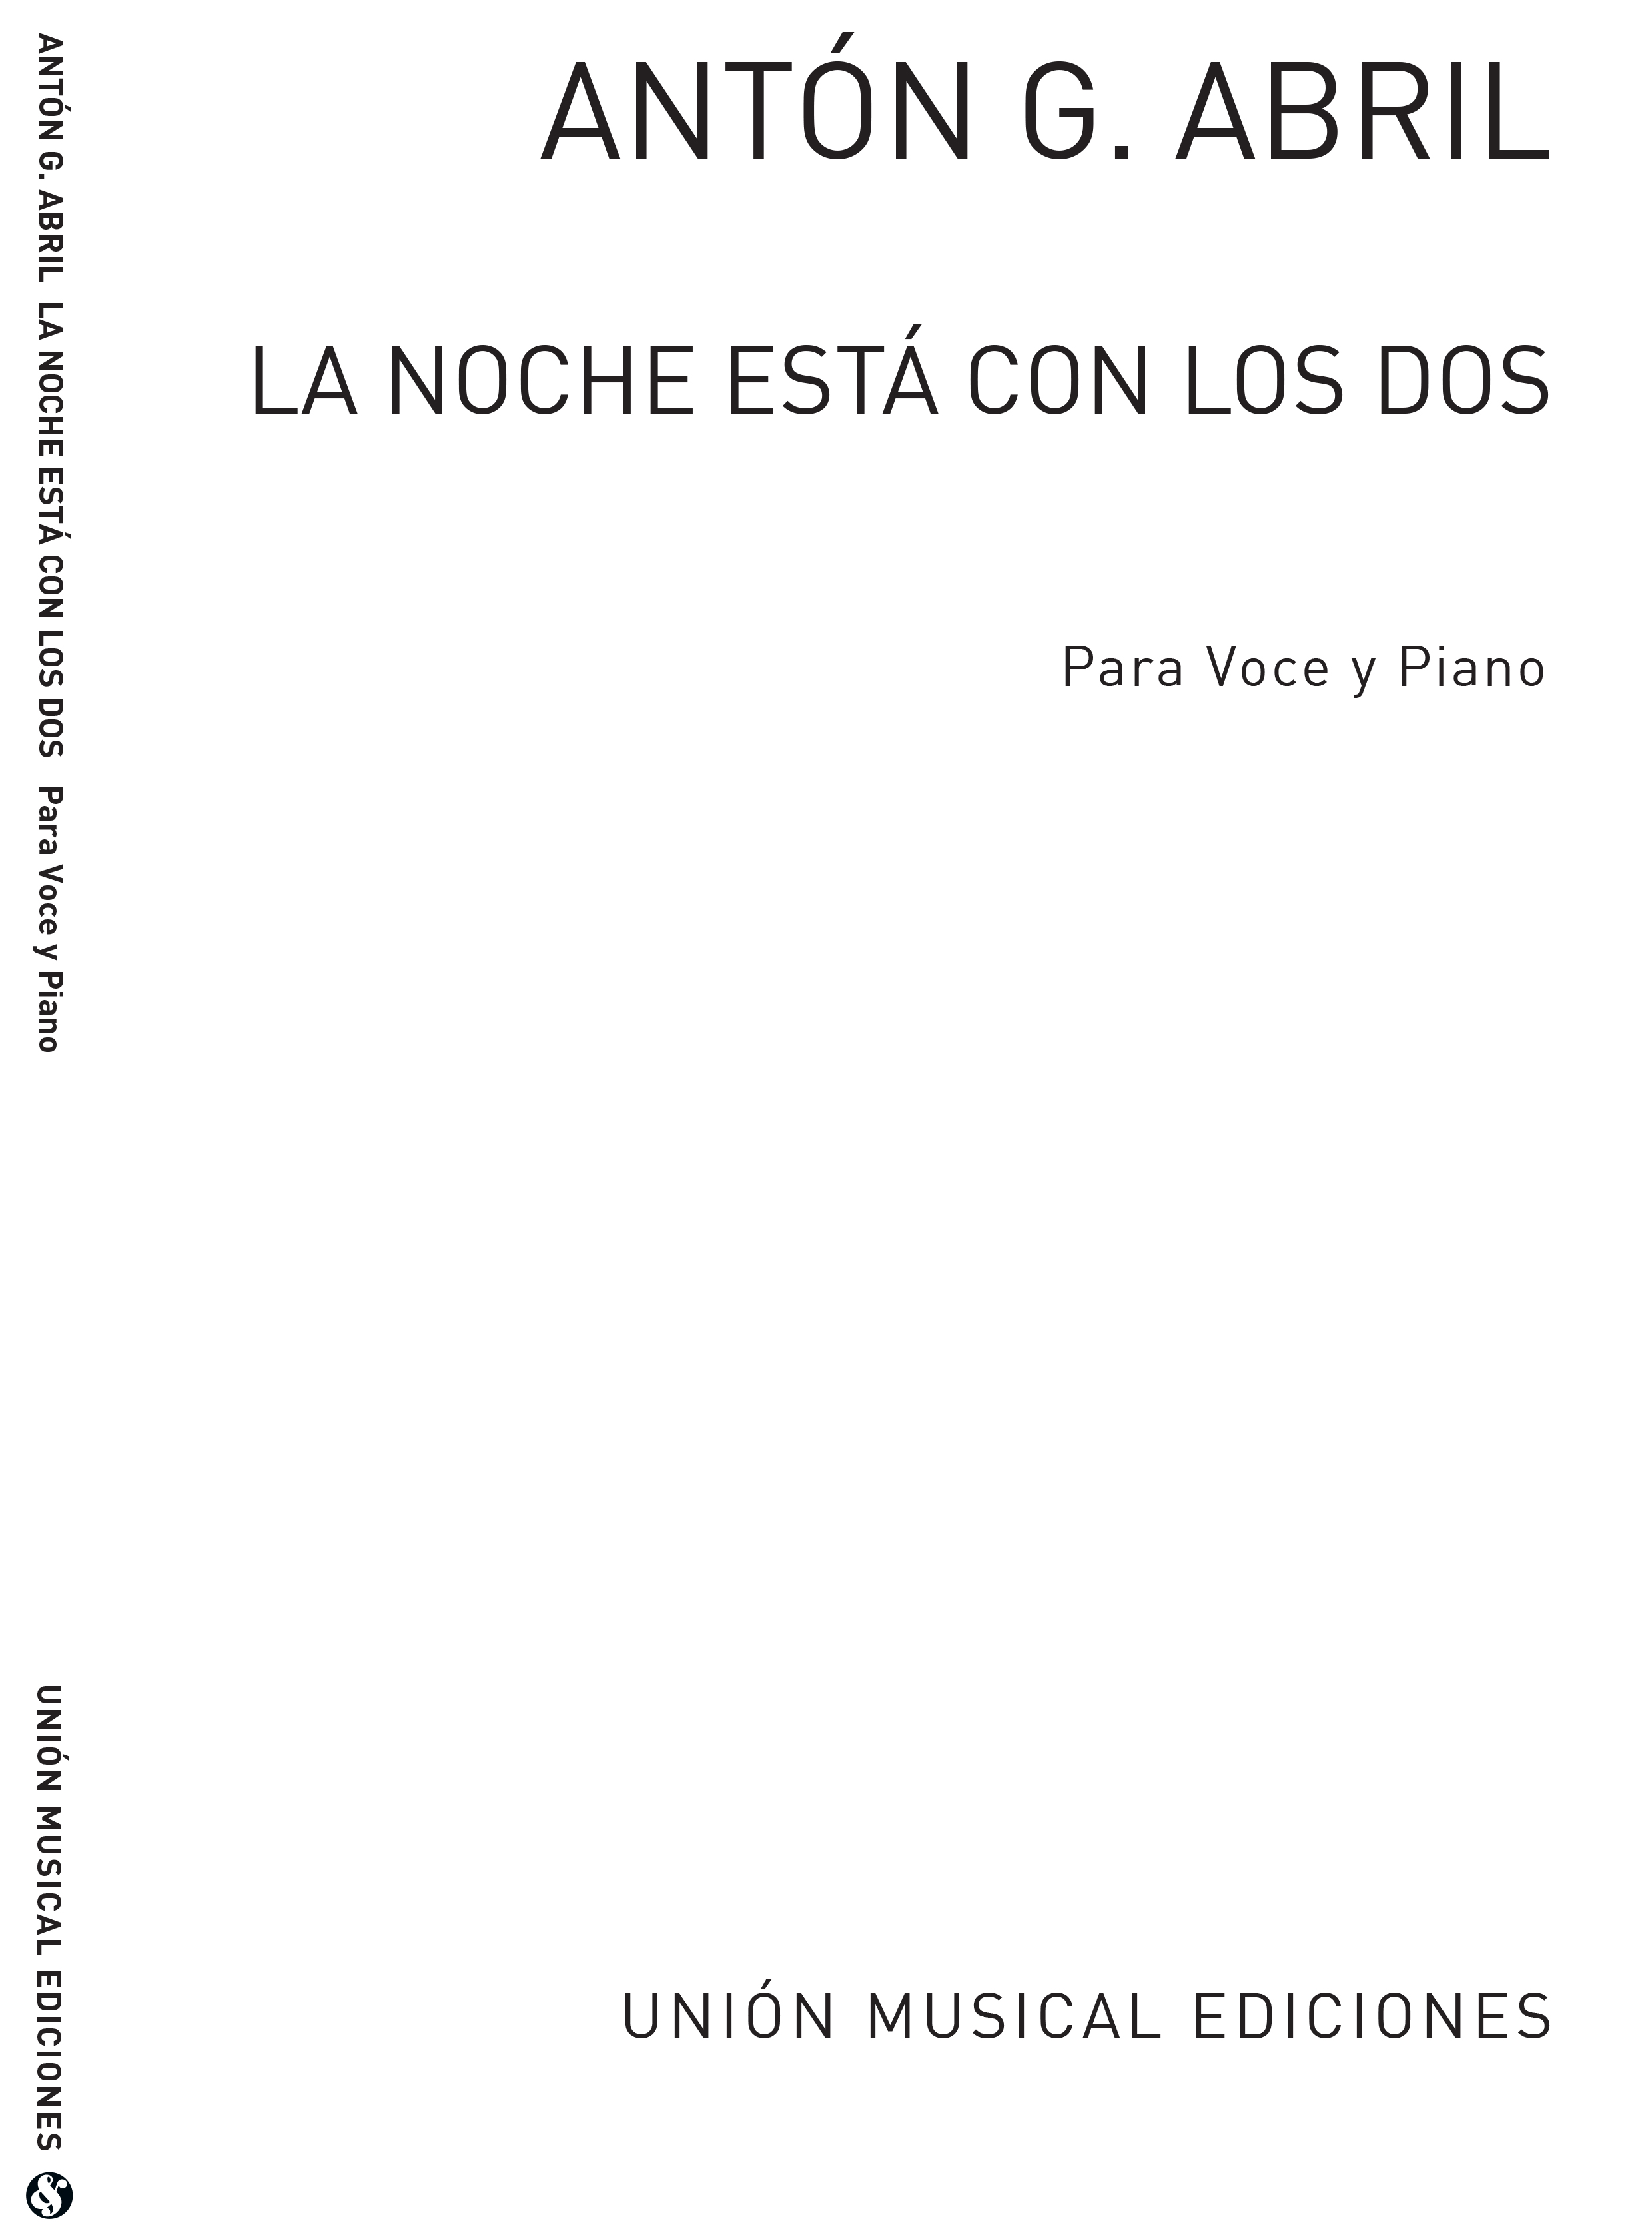 Anton Garcia Abril: La Noche Est Con Los Dos (Voice/Piano): Voice: Score